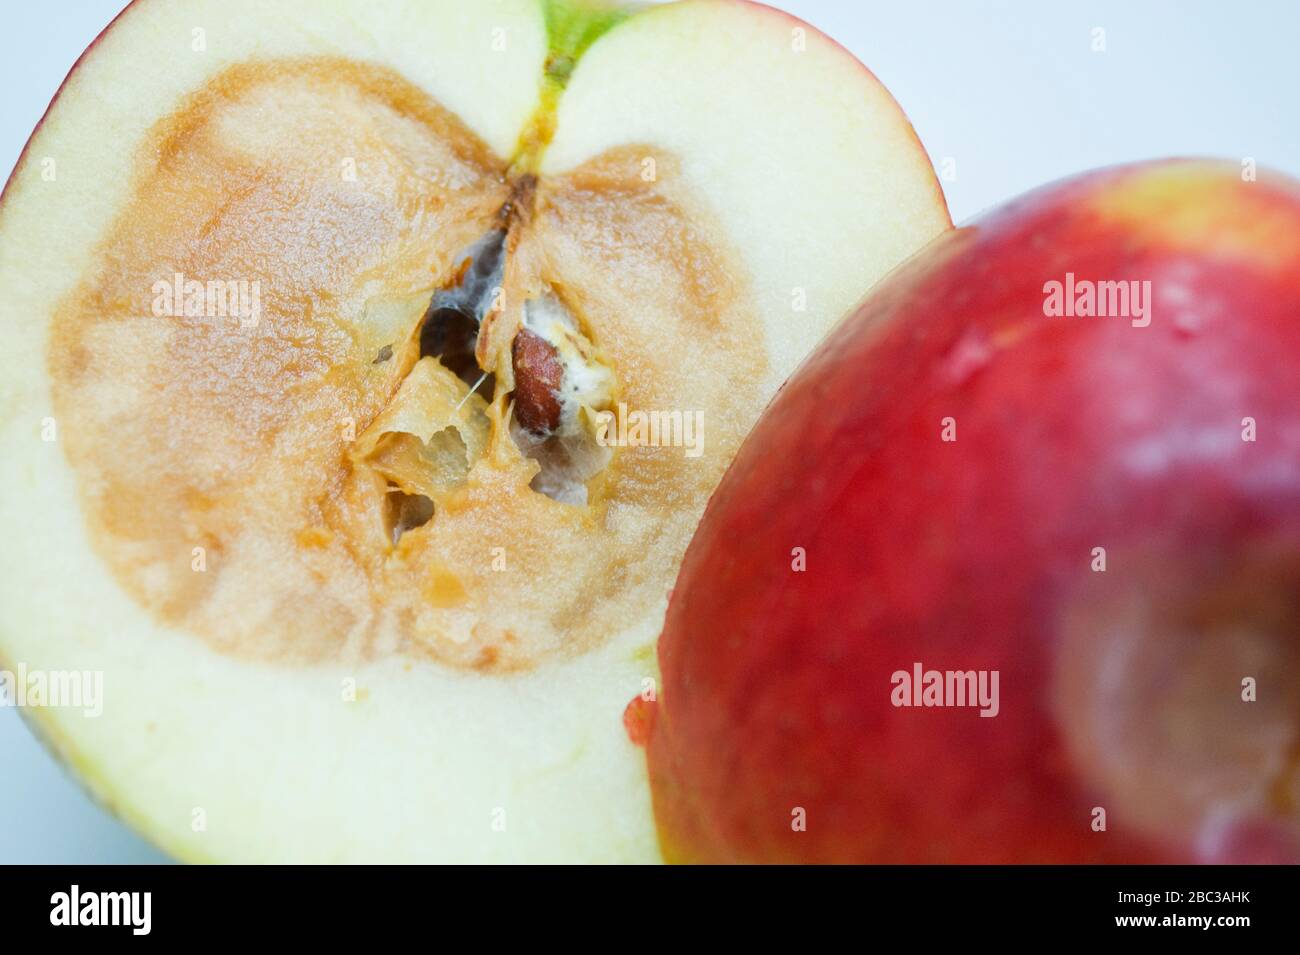 Raccolto stretto di mela rotten affettato a metà per esporre nucleo rotten. Altra metà con lividi sulla pelle. Foto Stock